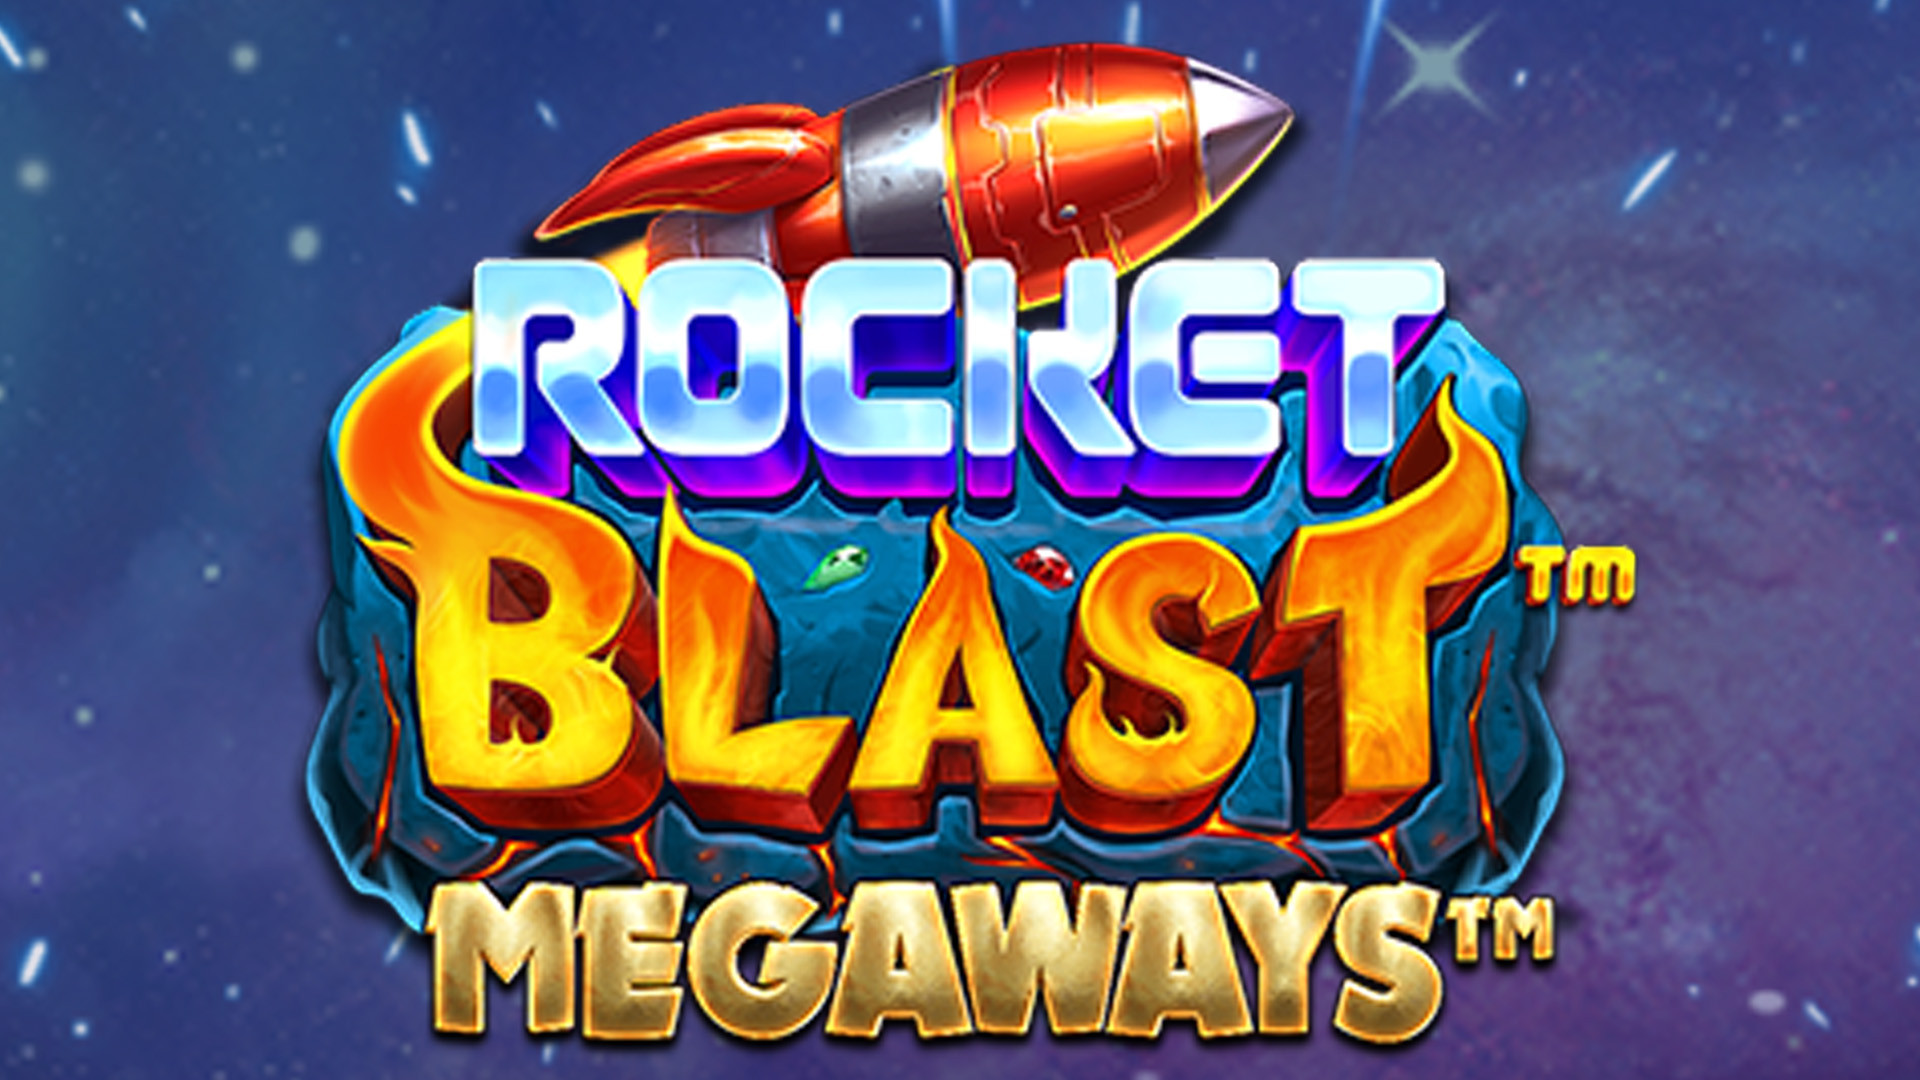 Rocket Blast MEGAWAYS